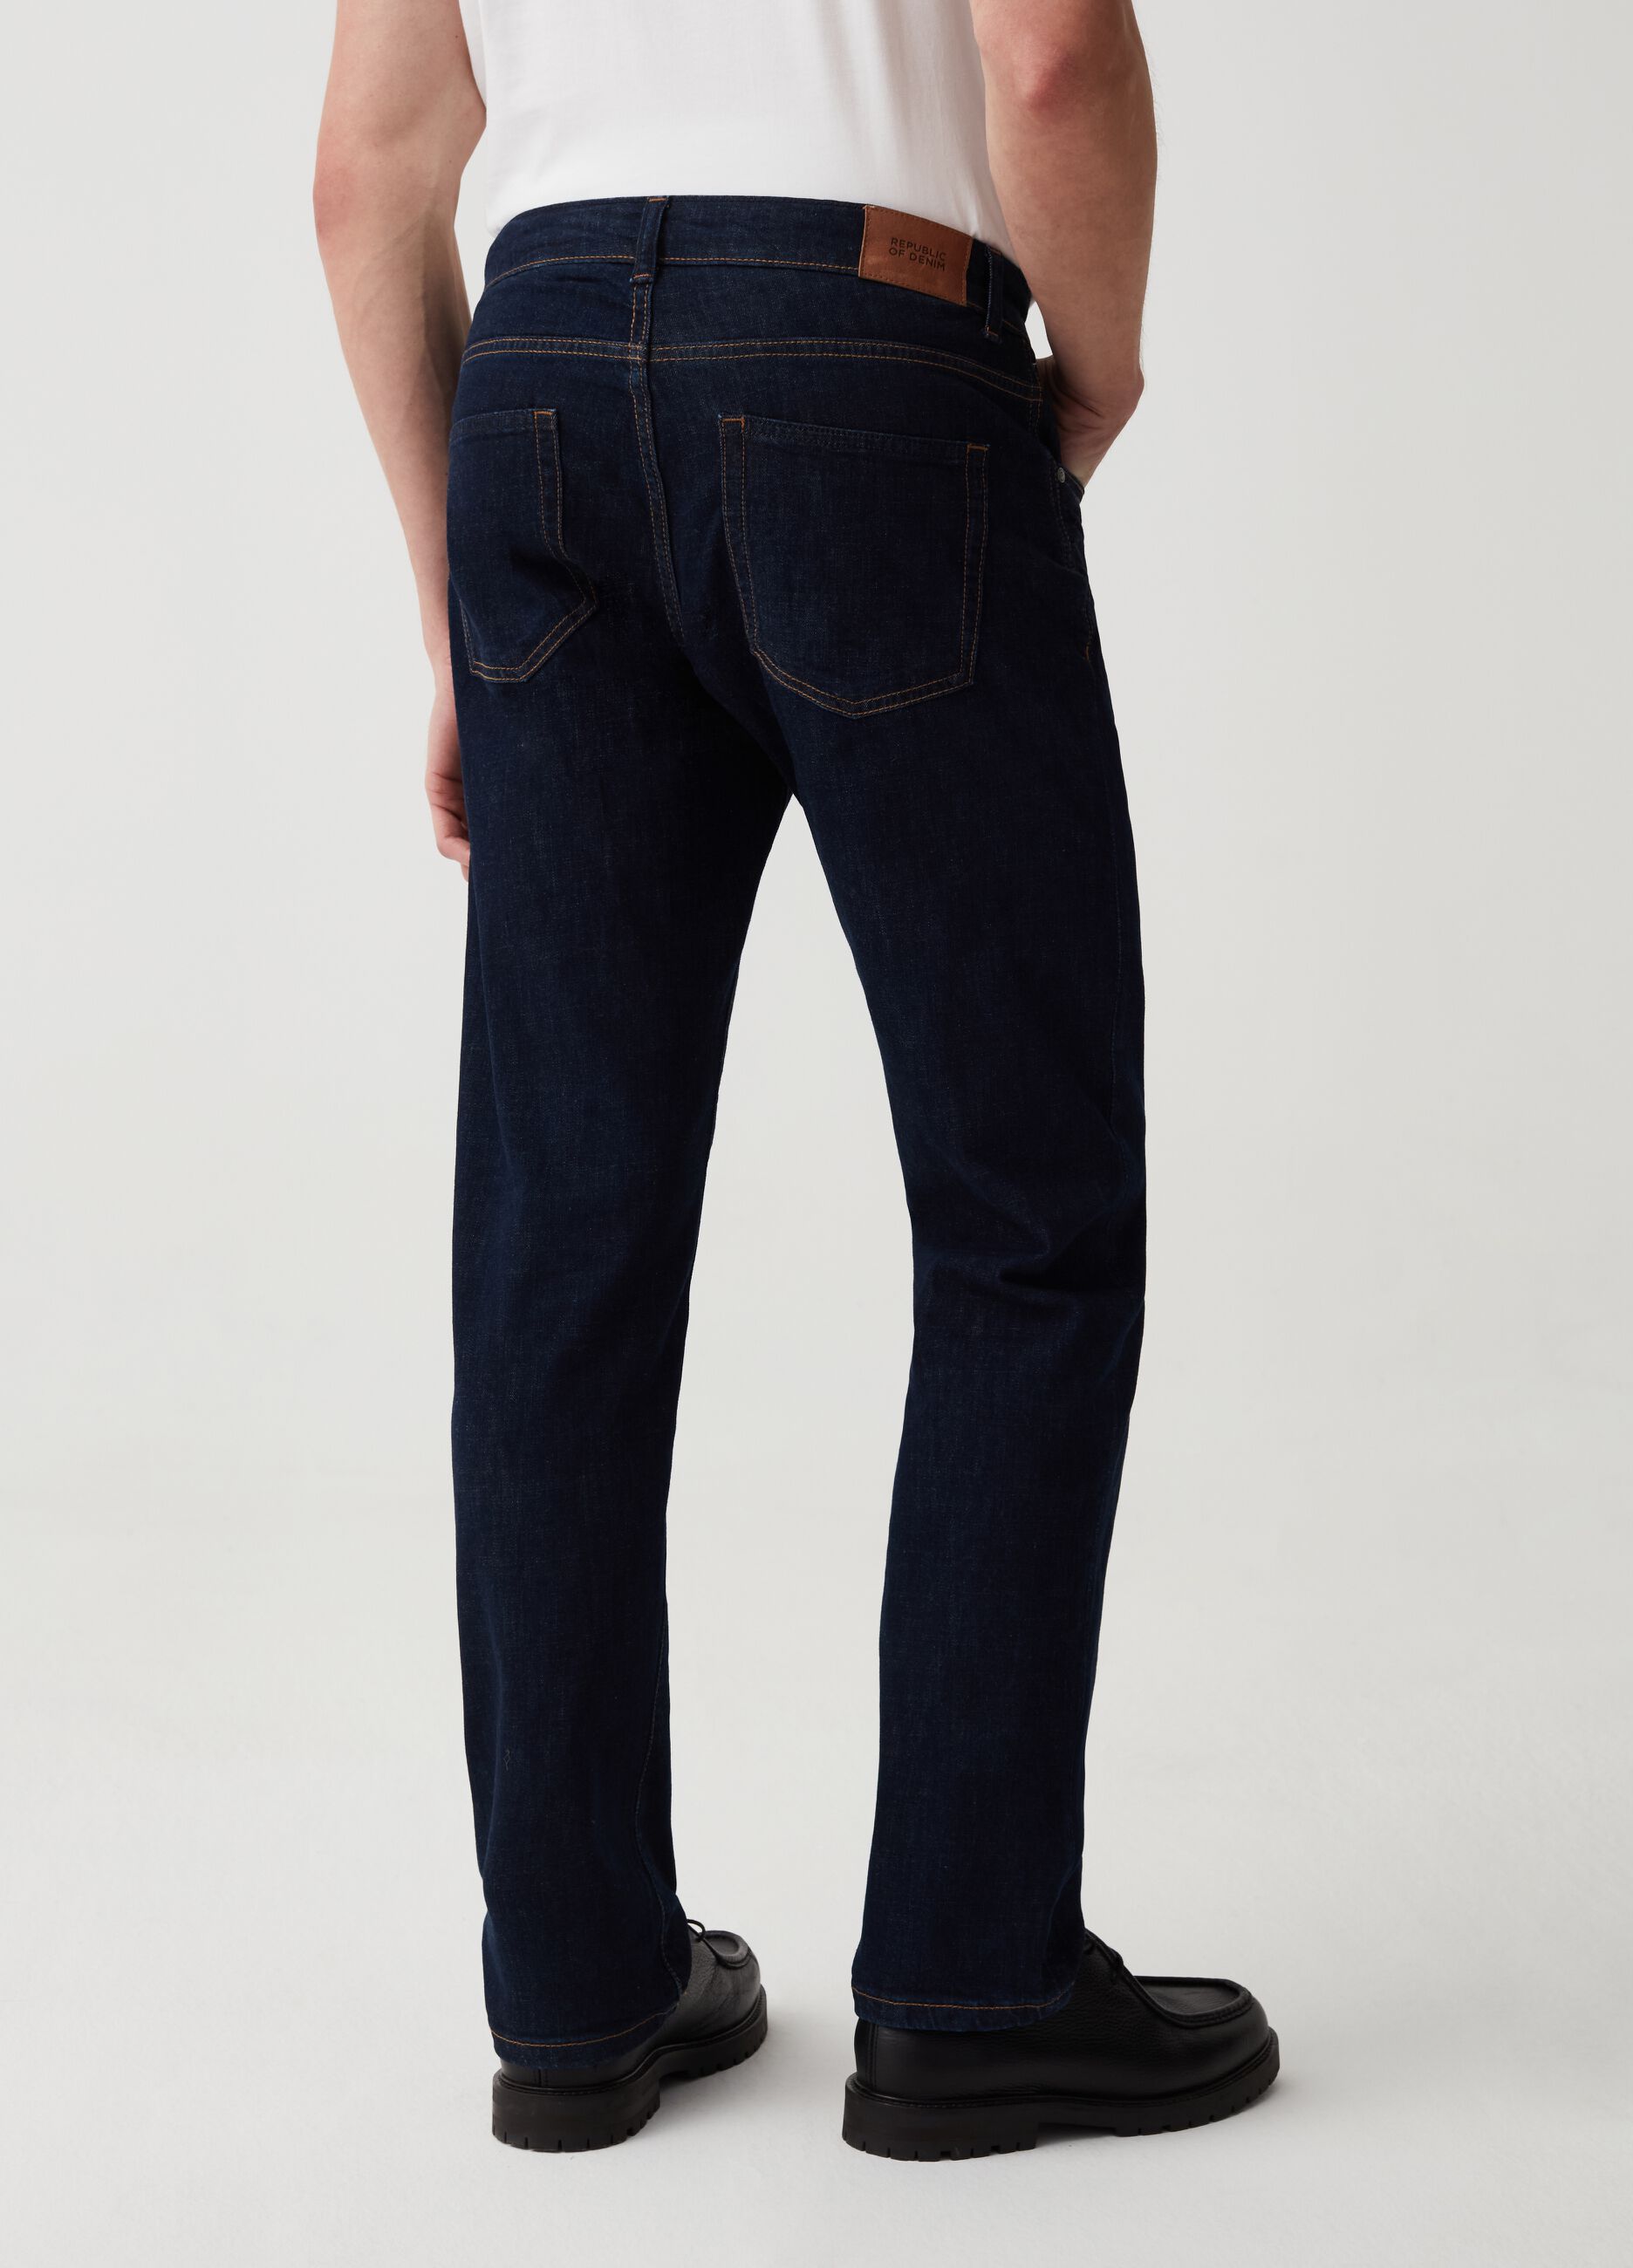 Jeans regular fit con trama cross hatch